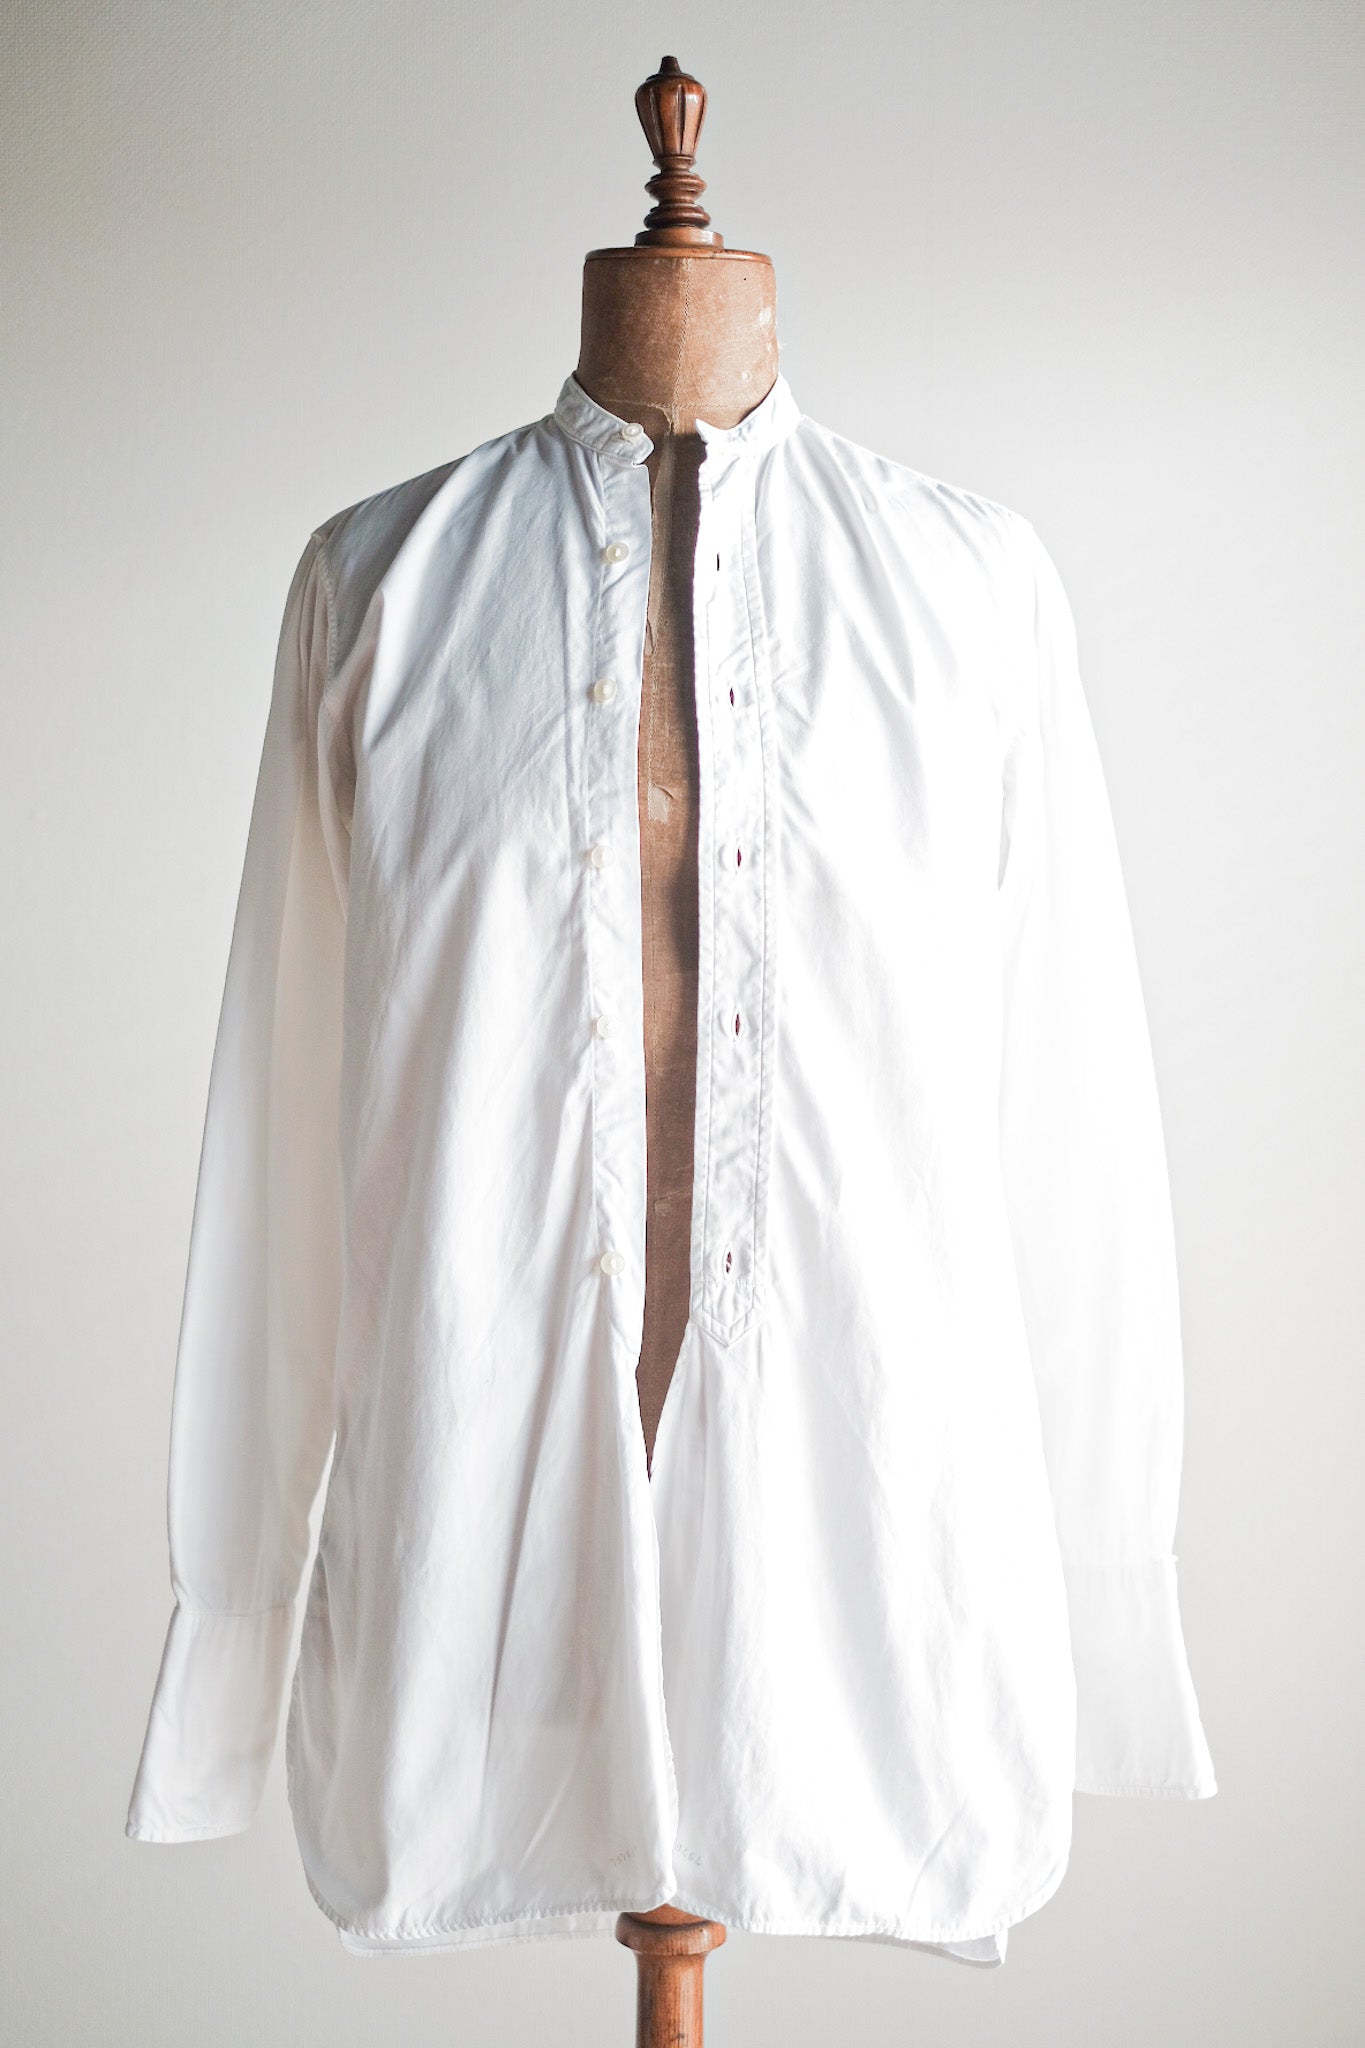 [~ 40 '] 영국 빈티지 드레스 셔츠 "van Heusen"